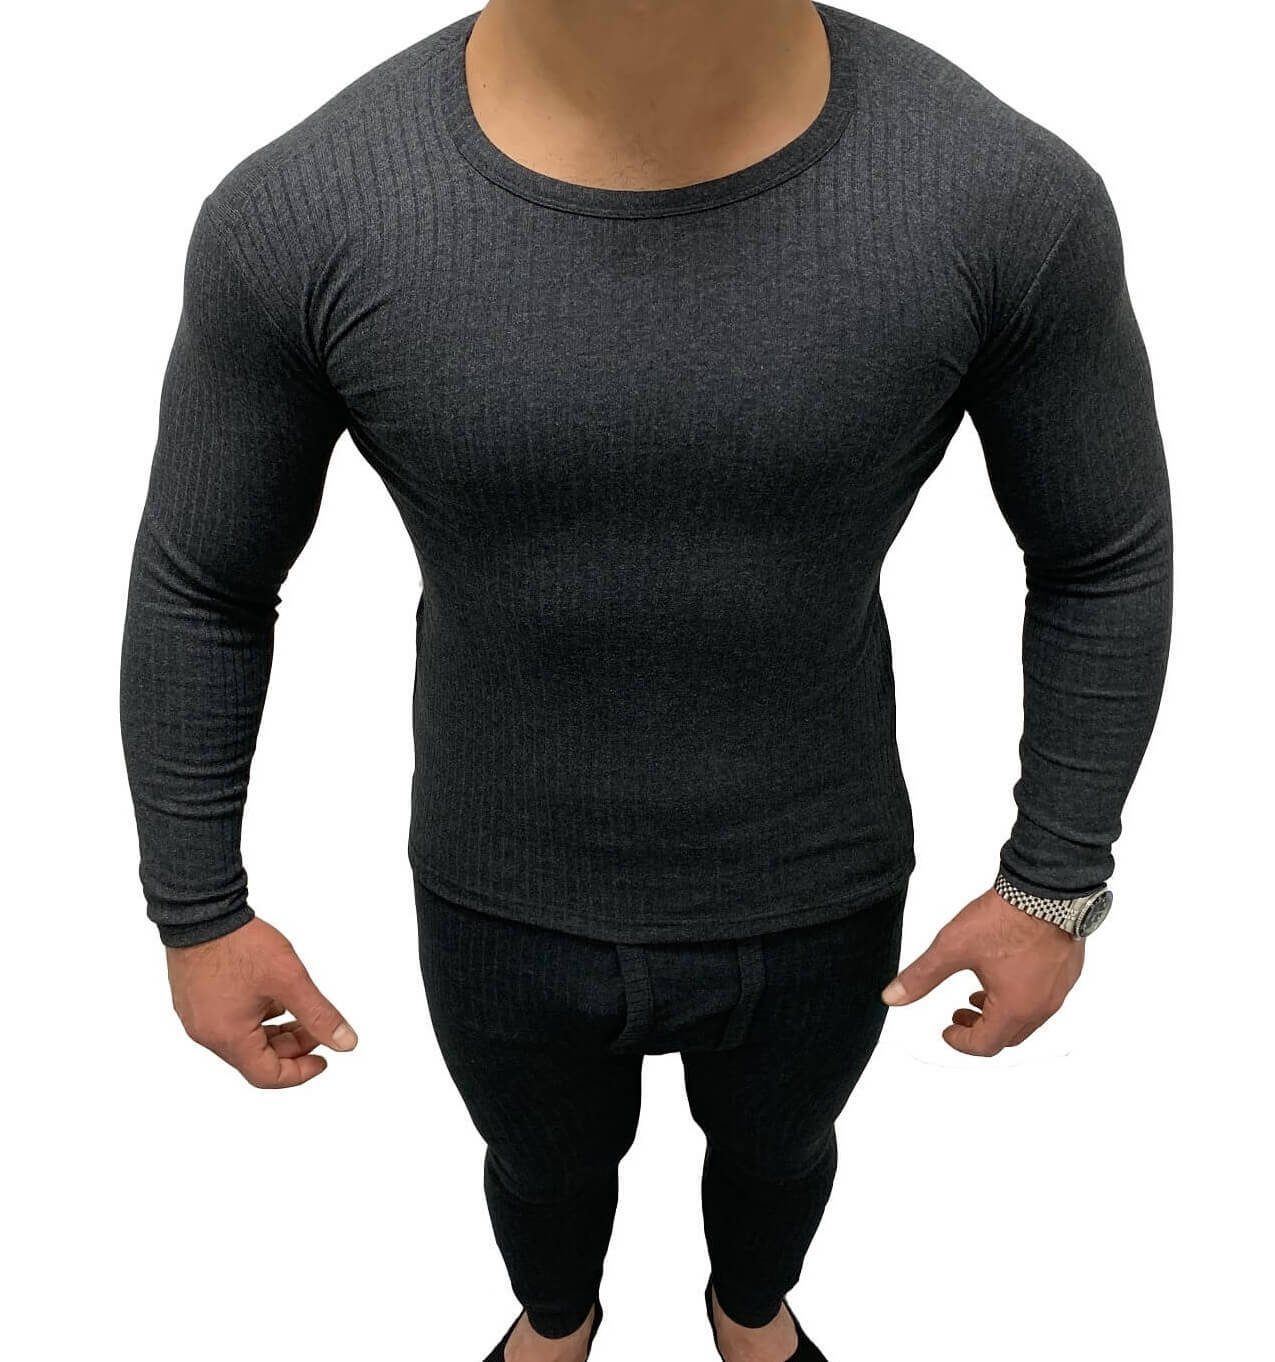 Garcia für Thermo-Shirt Herren warmes weich, elastisch langärmliges Thermounterhemd Pescara anthrazit